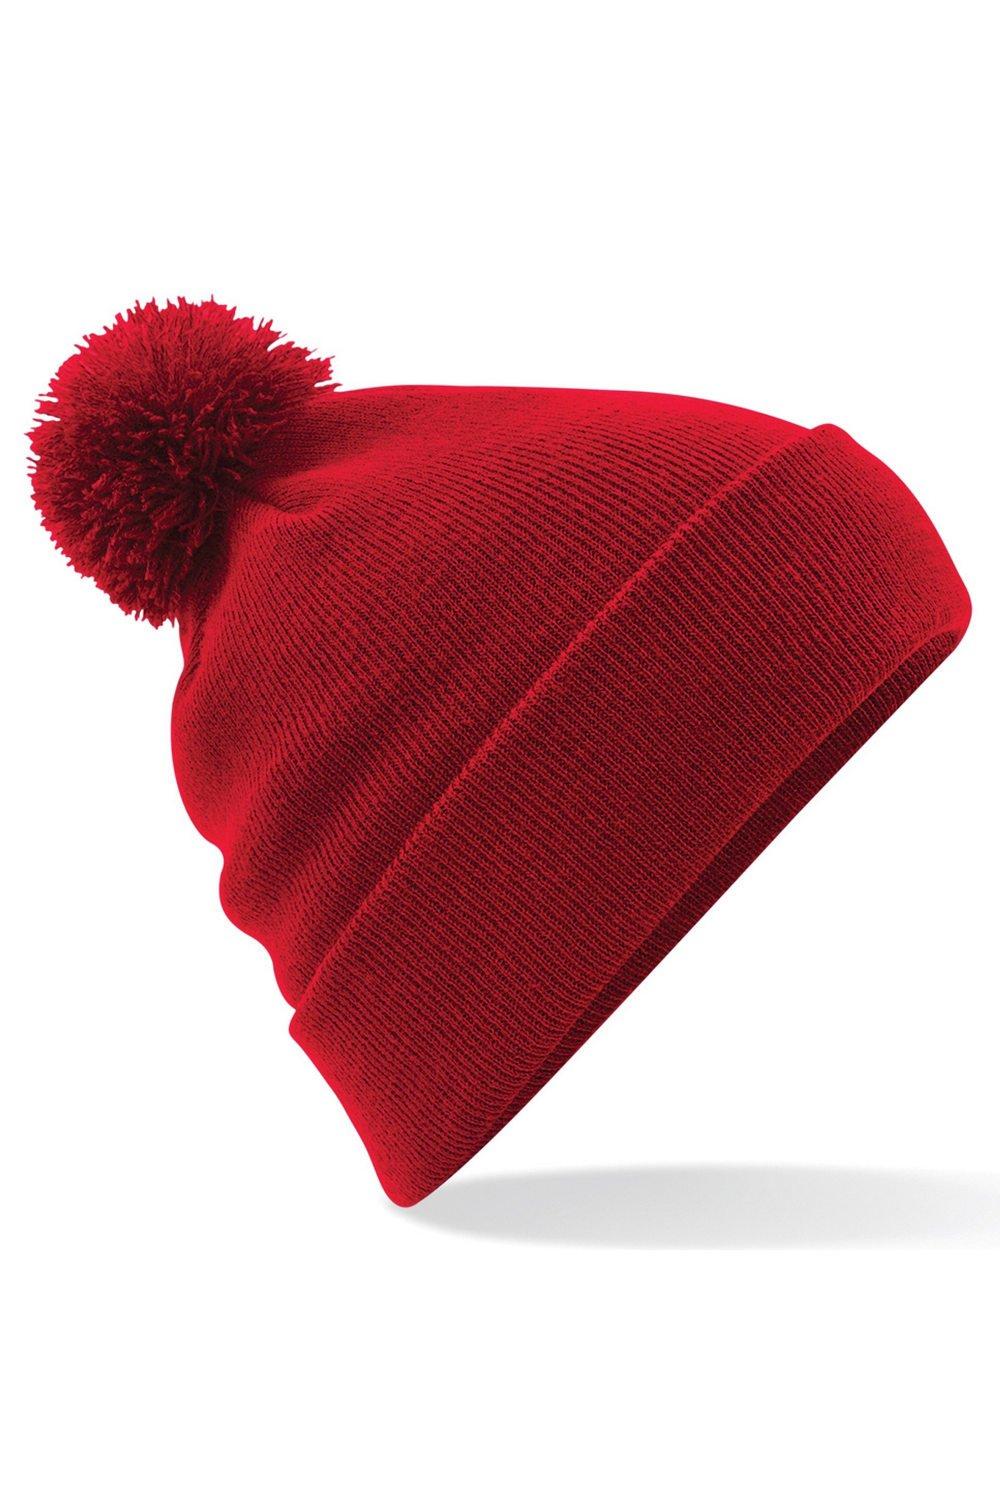 Оригинальная зимняя шапка-бини с помпоном Beechfield, красный оригинальная зимняя шапка бини с манжетами beechfield красный